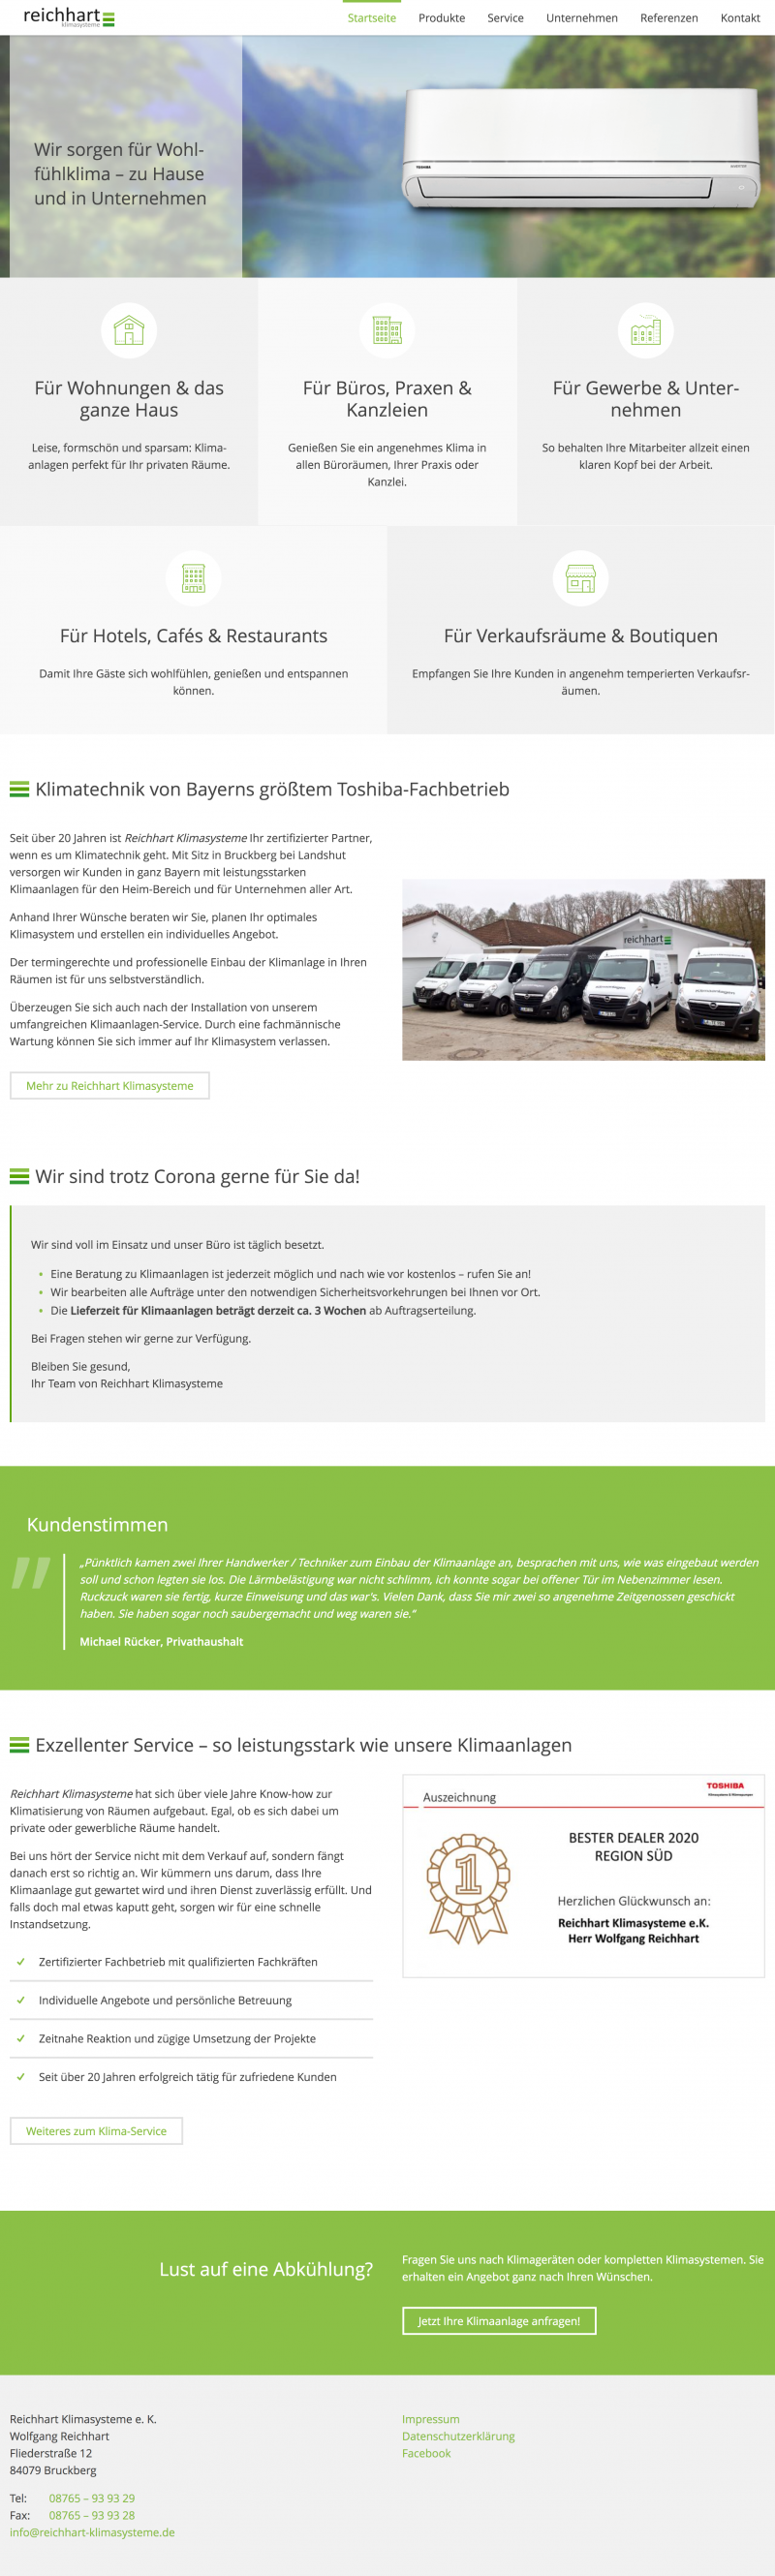 Screenshot Webauftritt Reichhart Klimasysteme